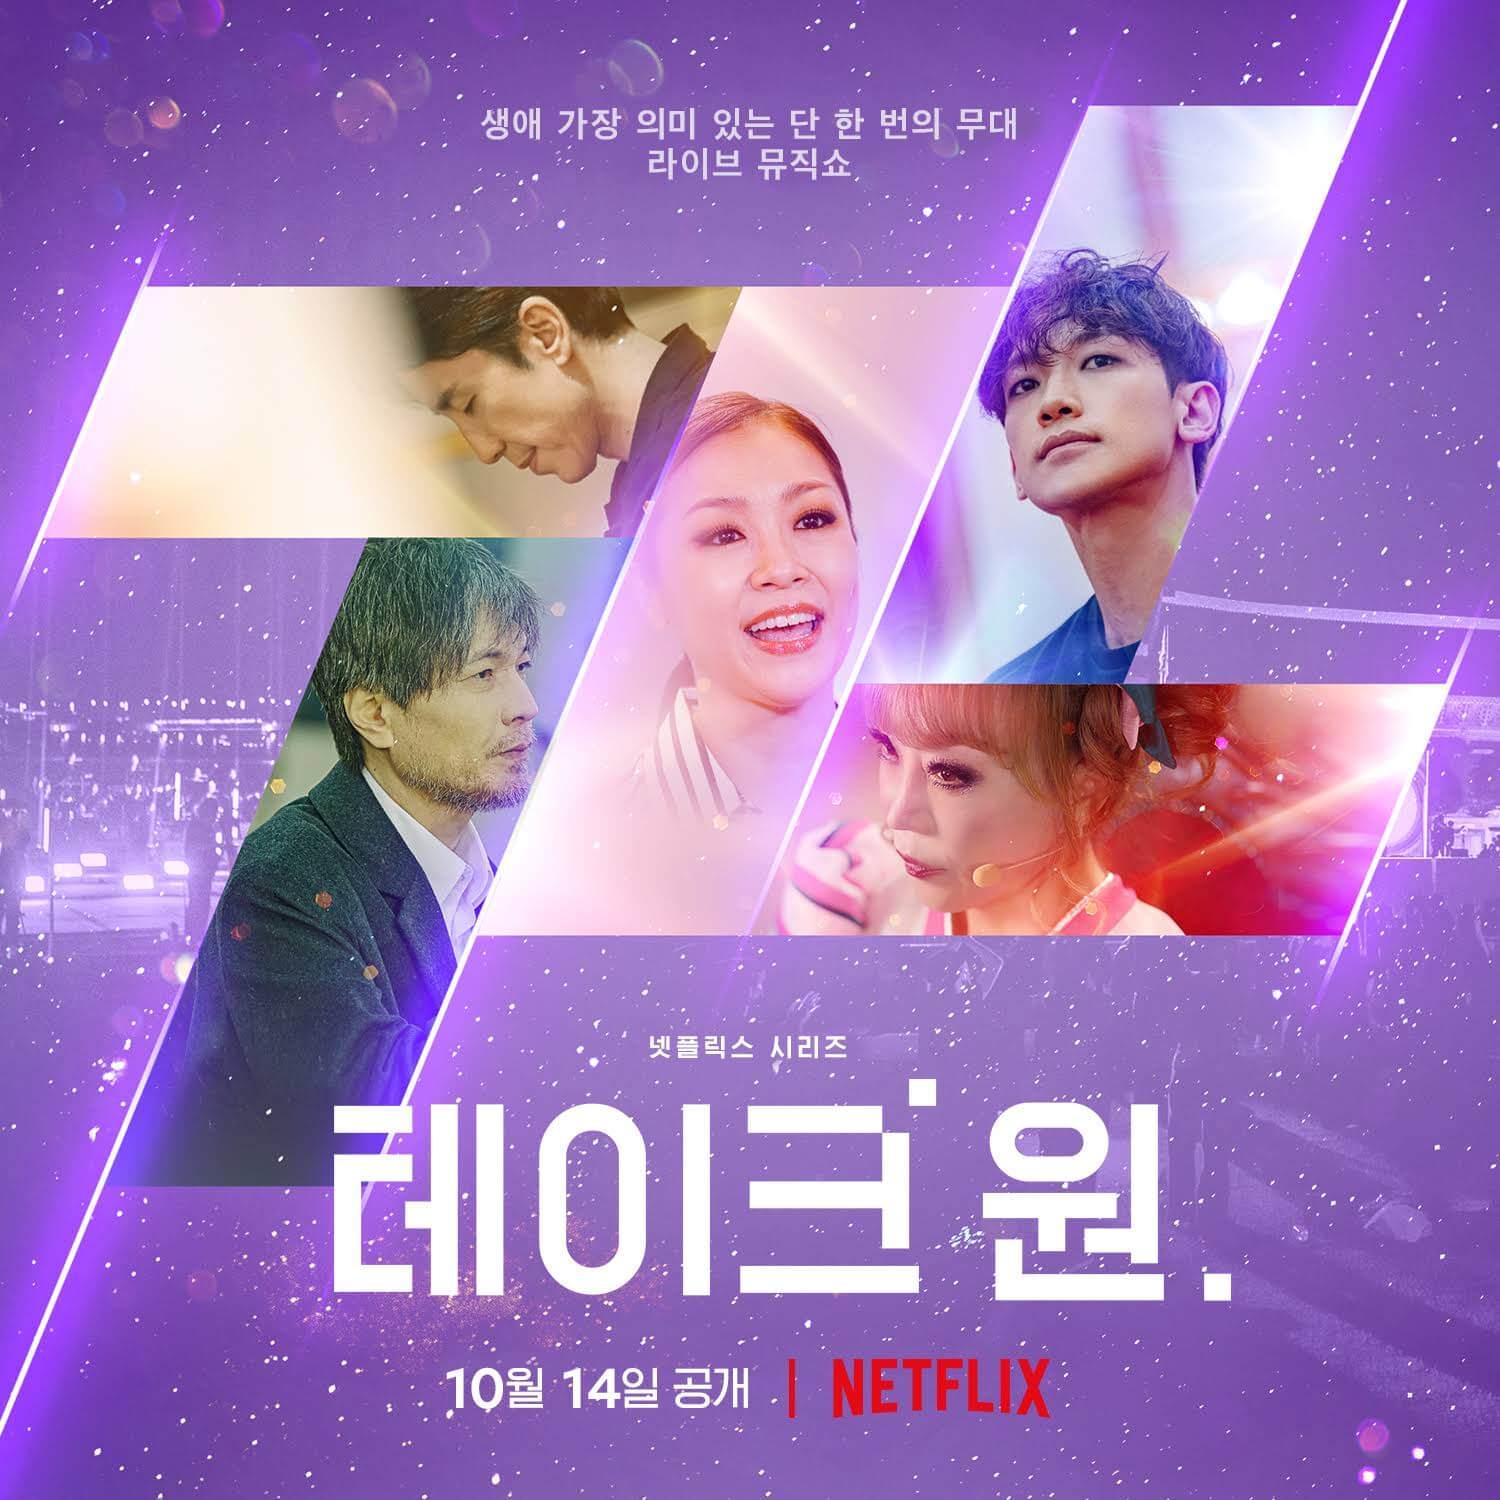 l'émission de variétés musicales coréennes take 1 arrive sur netflix en octobre 2022 poster 1